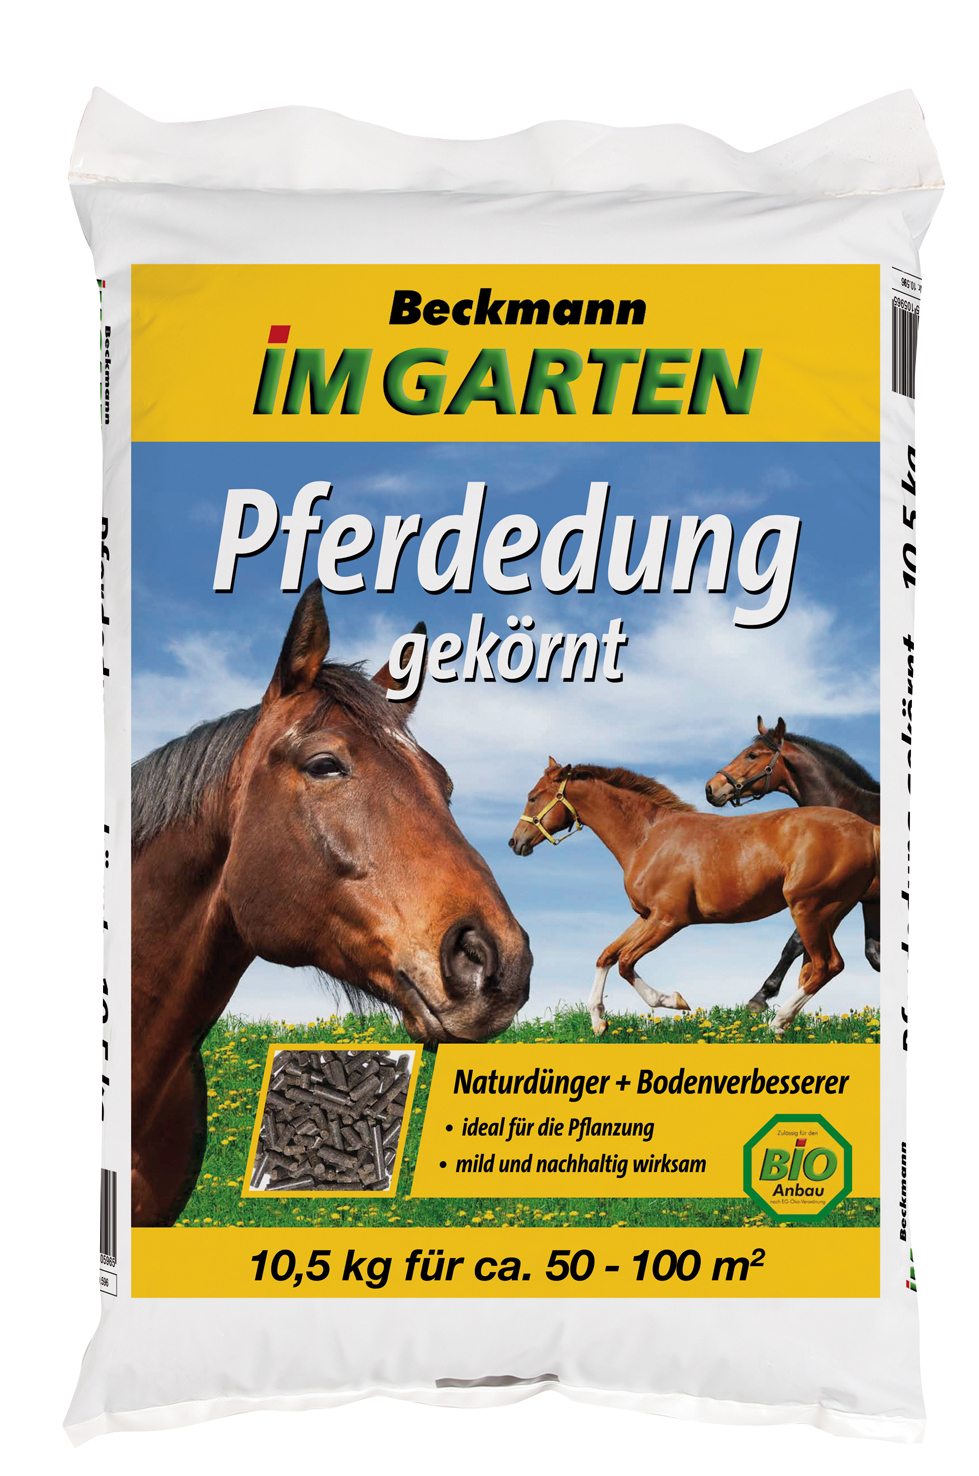 Beckmann & Brehm GmbH Pferdedung gekörnt 10,5kg